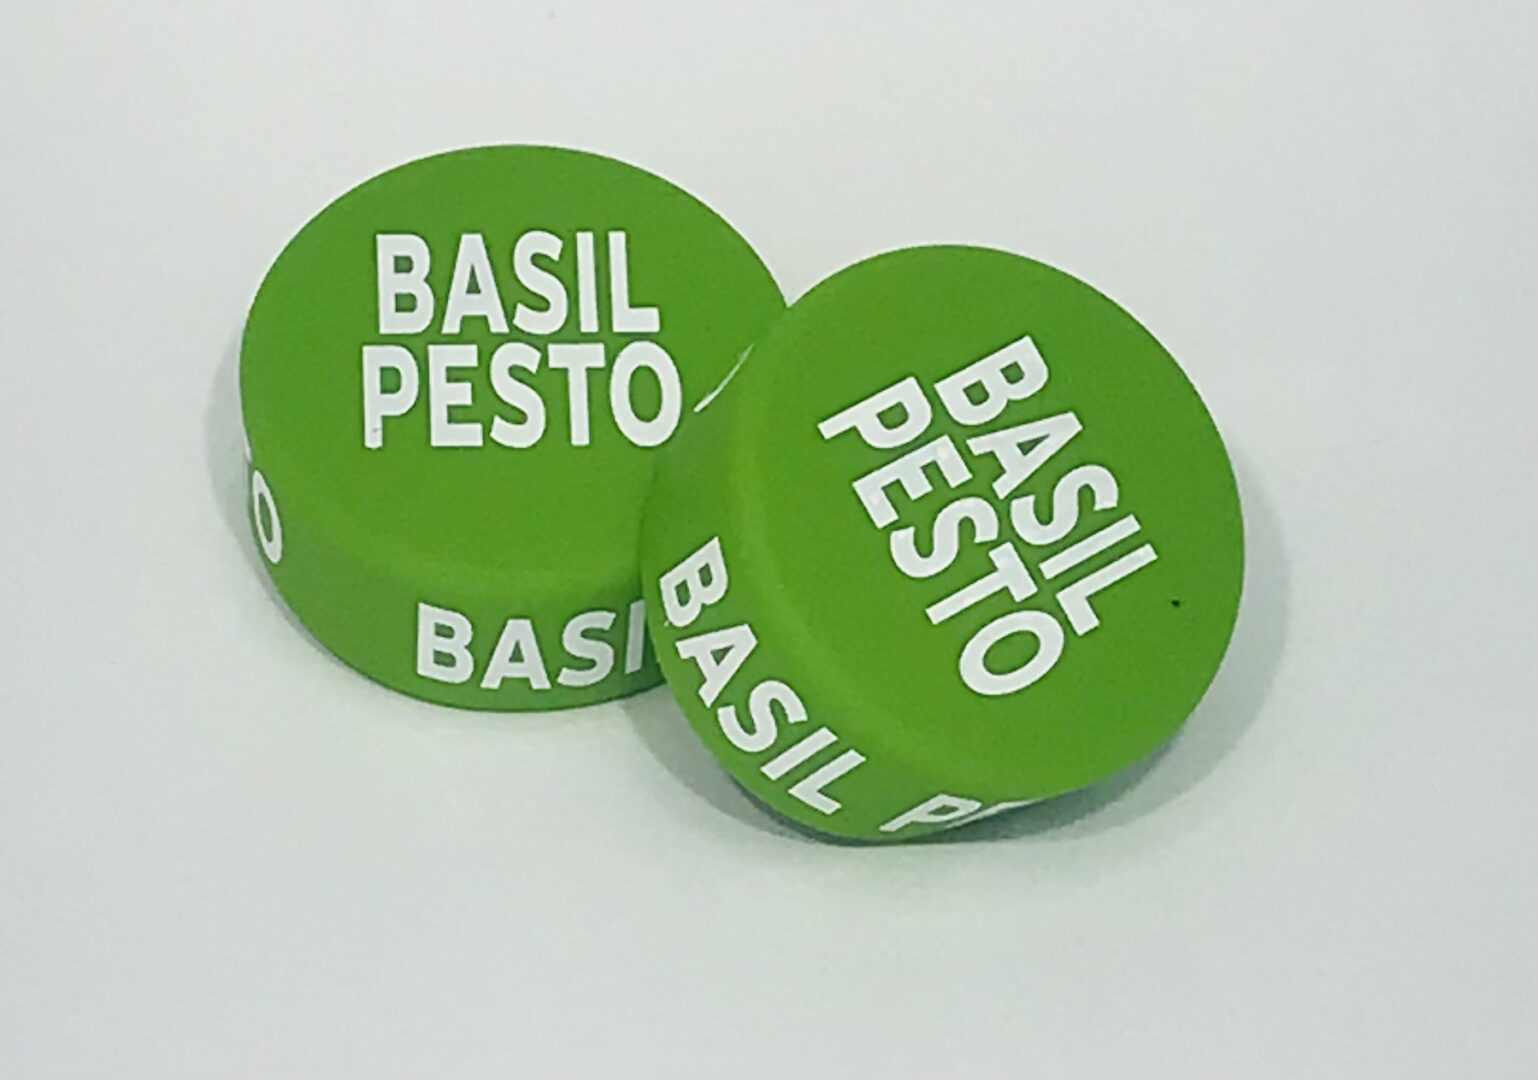 Basil Pesto